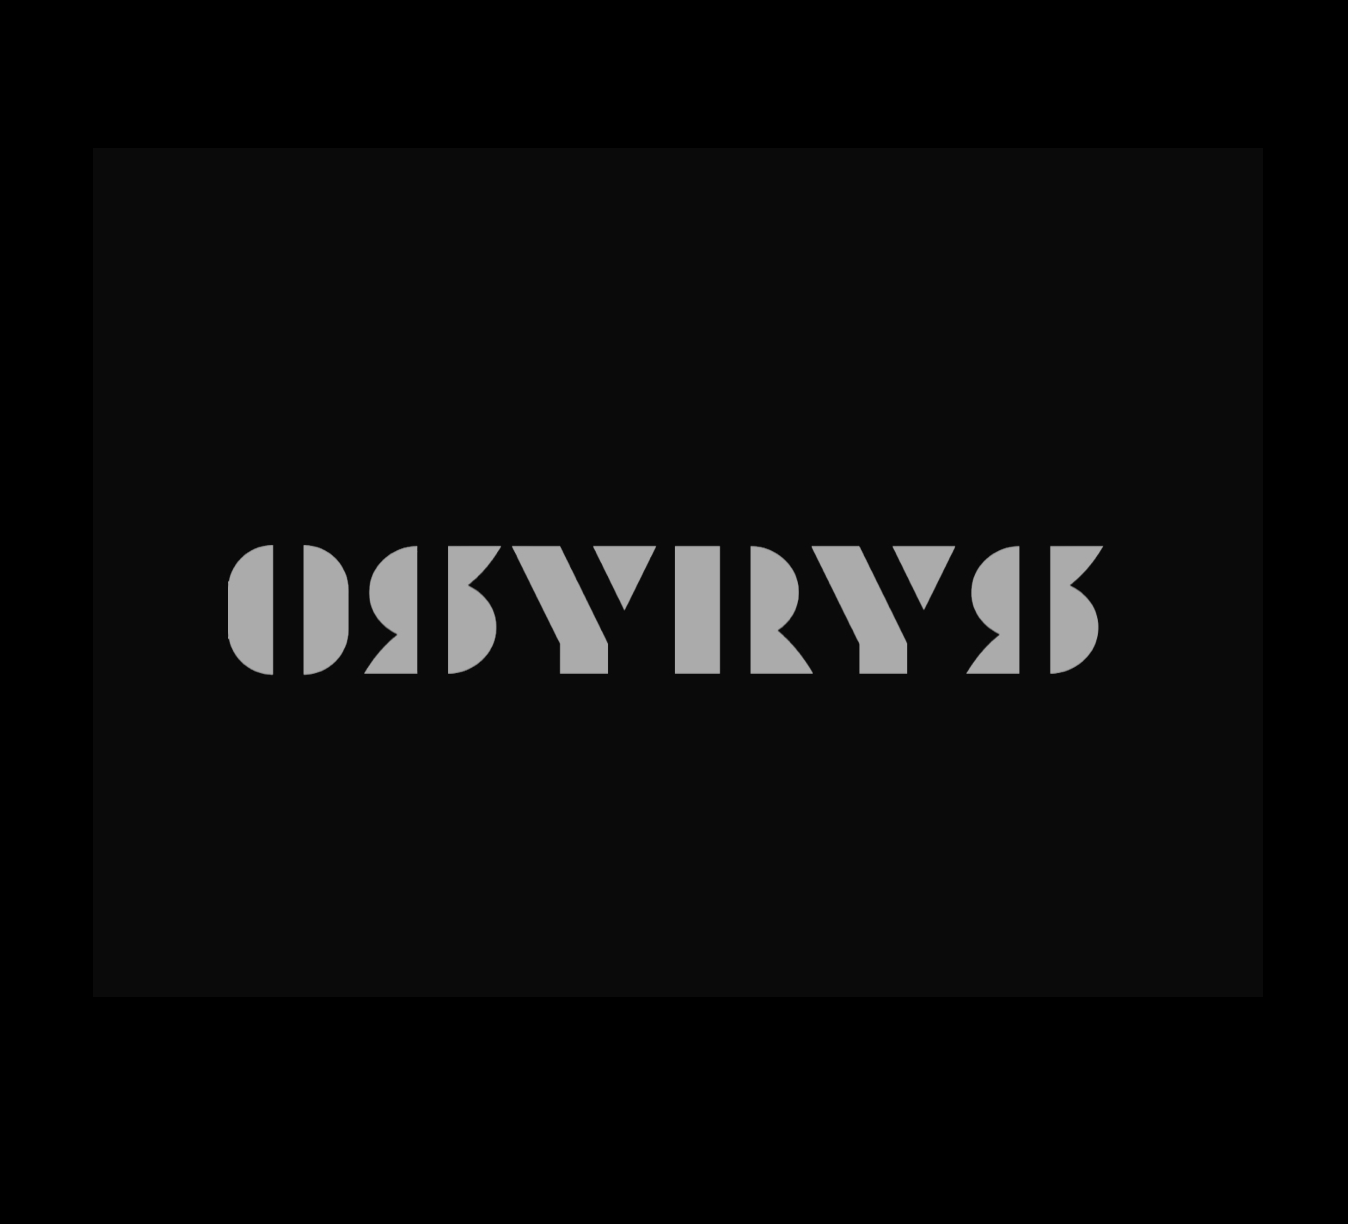 Osyrys